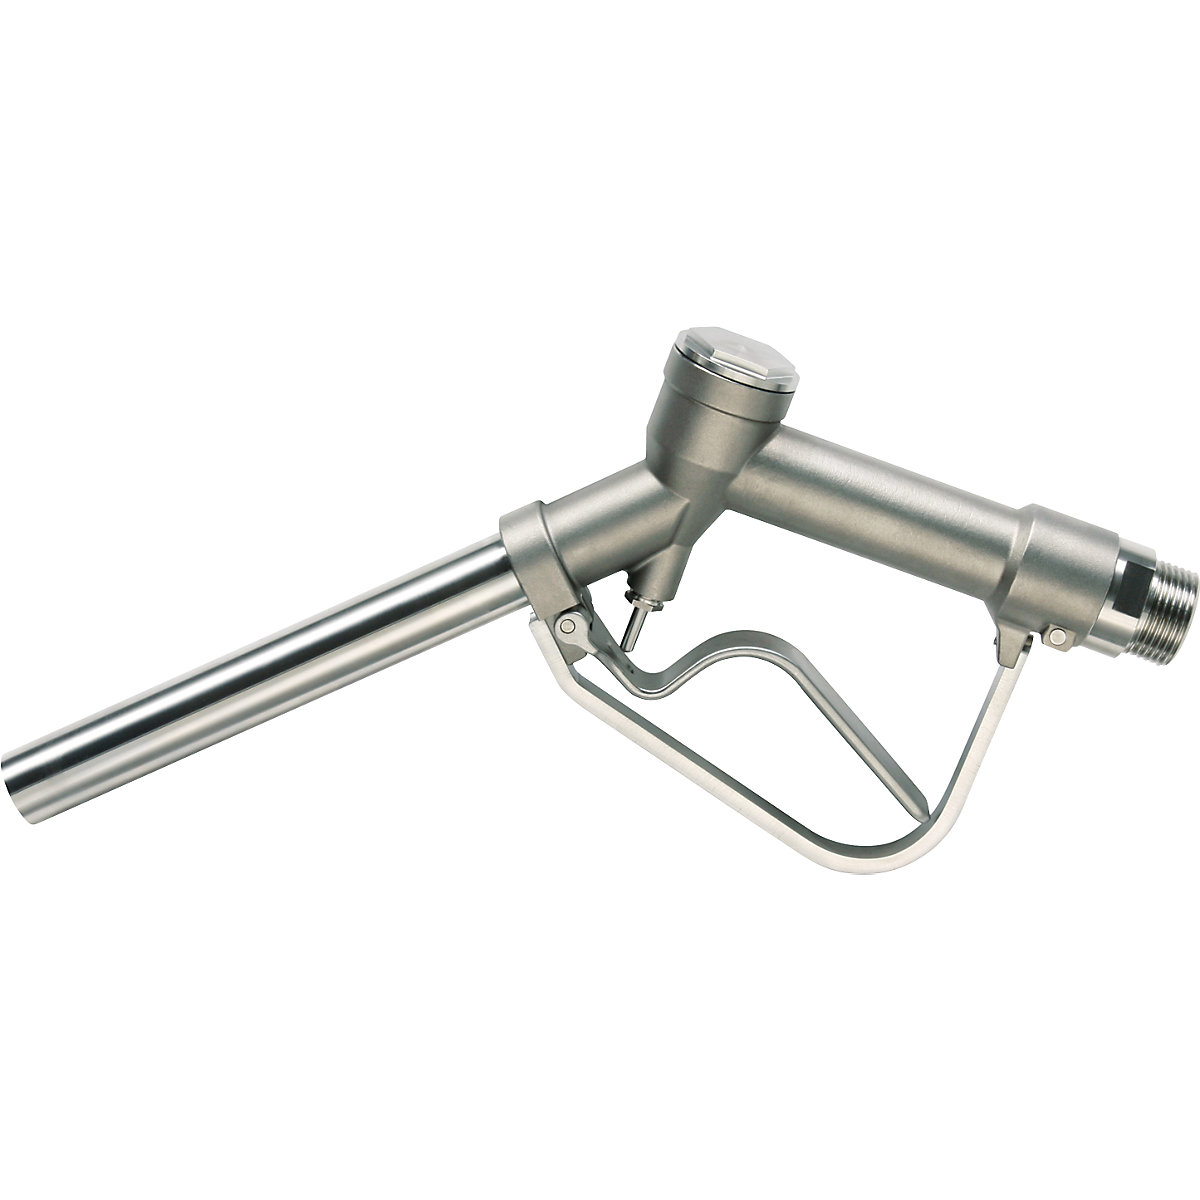 Pistola dispensadora manual de acero inoxidable 1.4571 – Jessberger